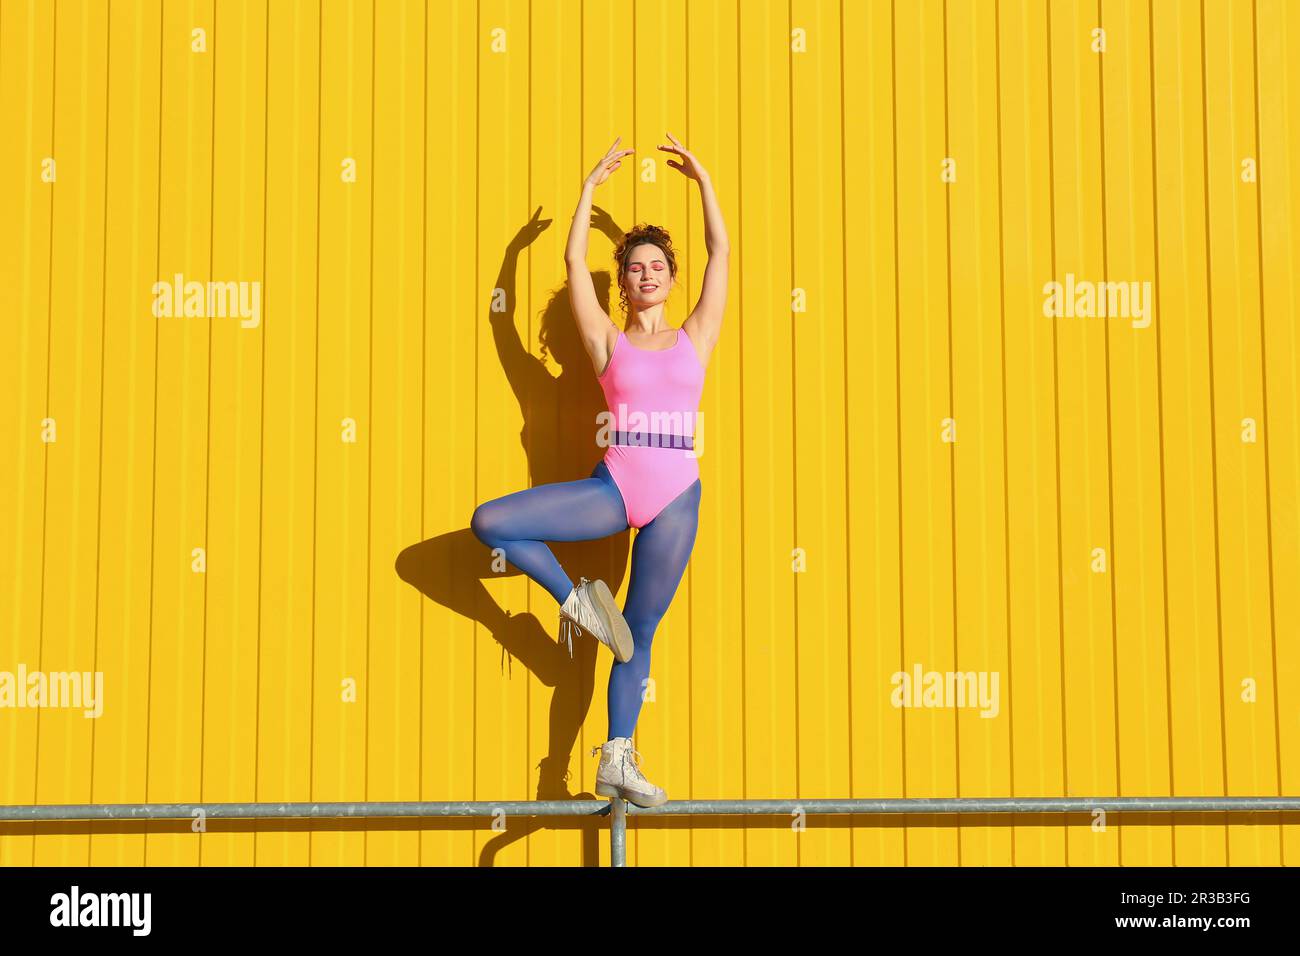 Junge Frau, die einen Body trägt und Ballett am Geländer vor der gelben Wand übt Stockfoto